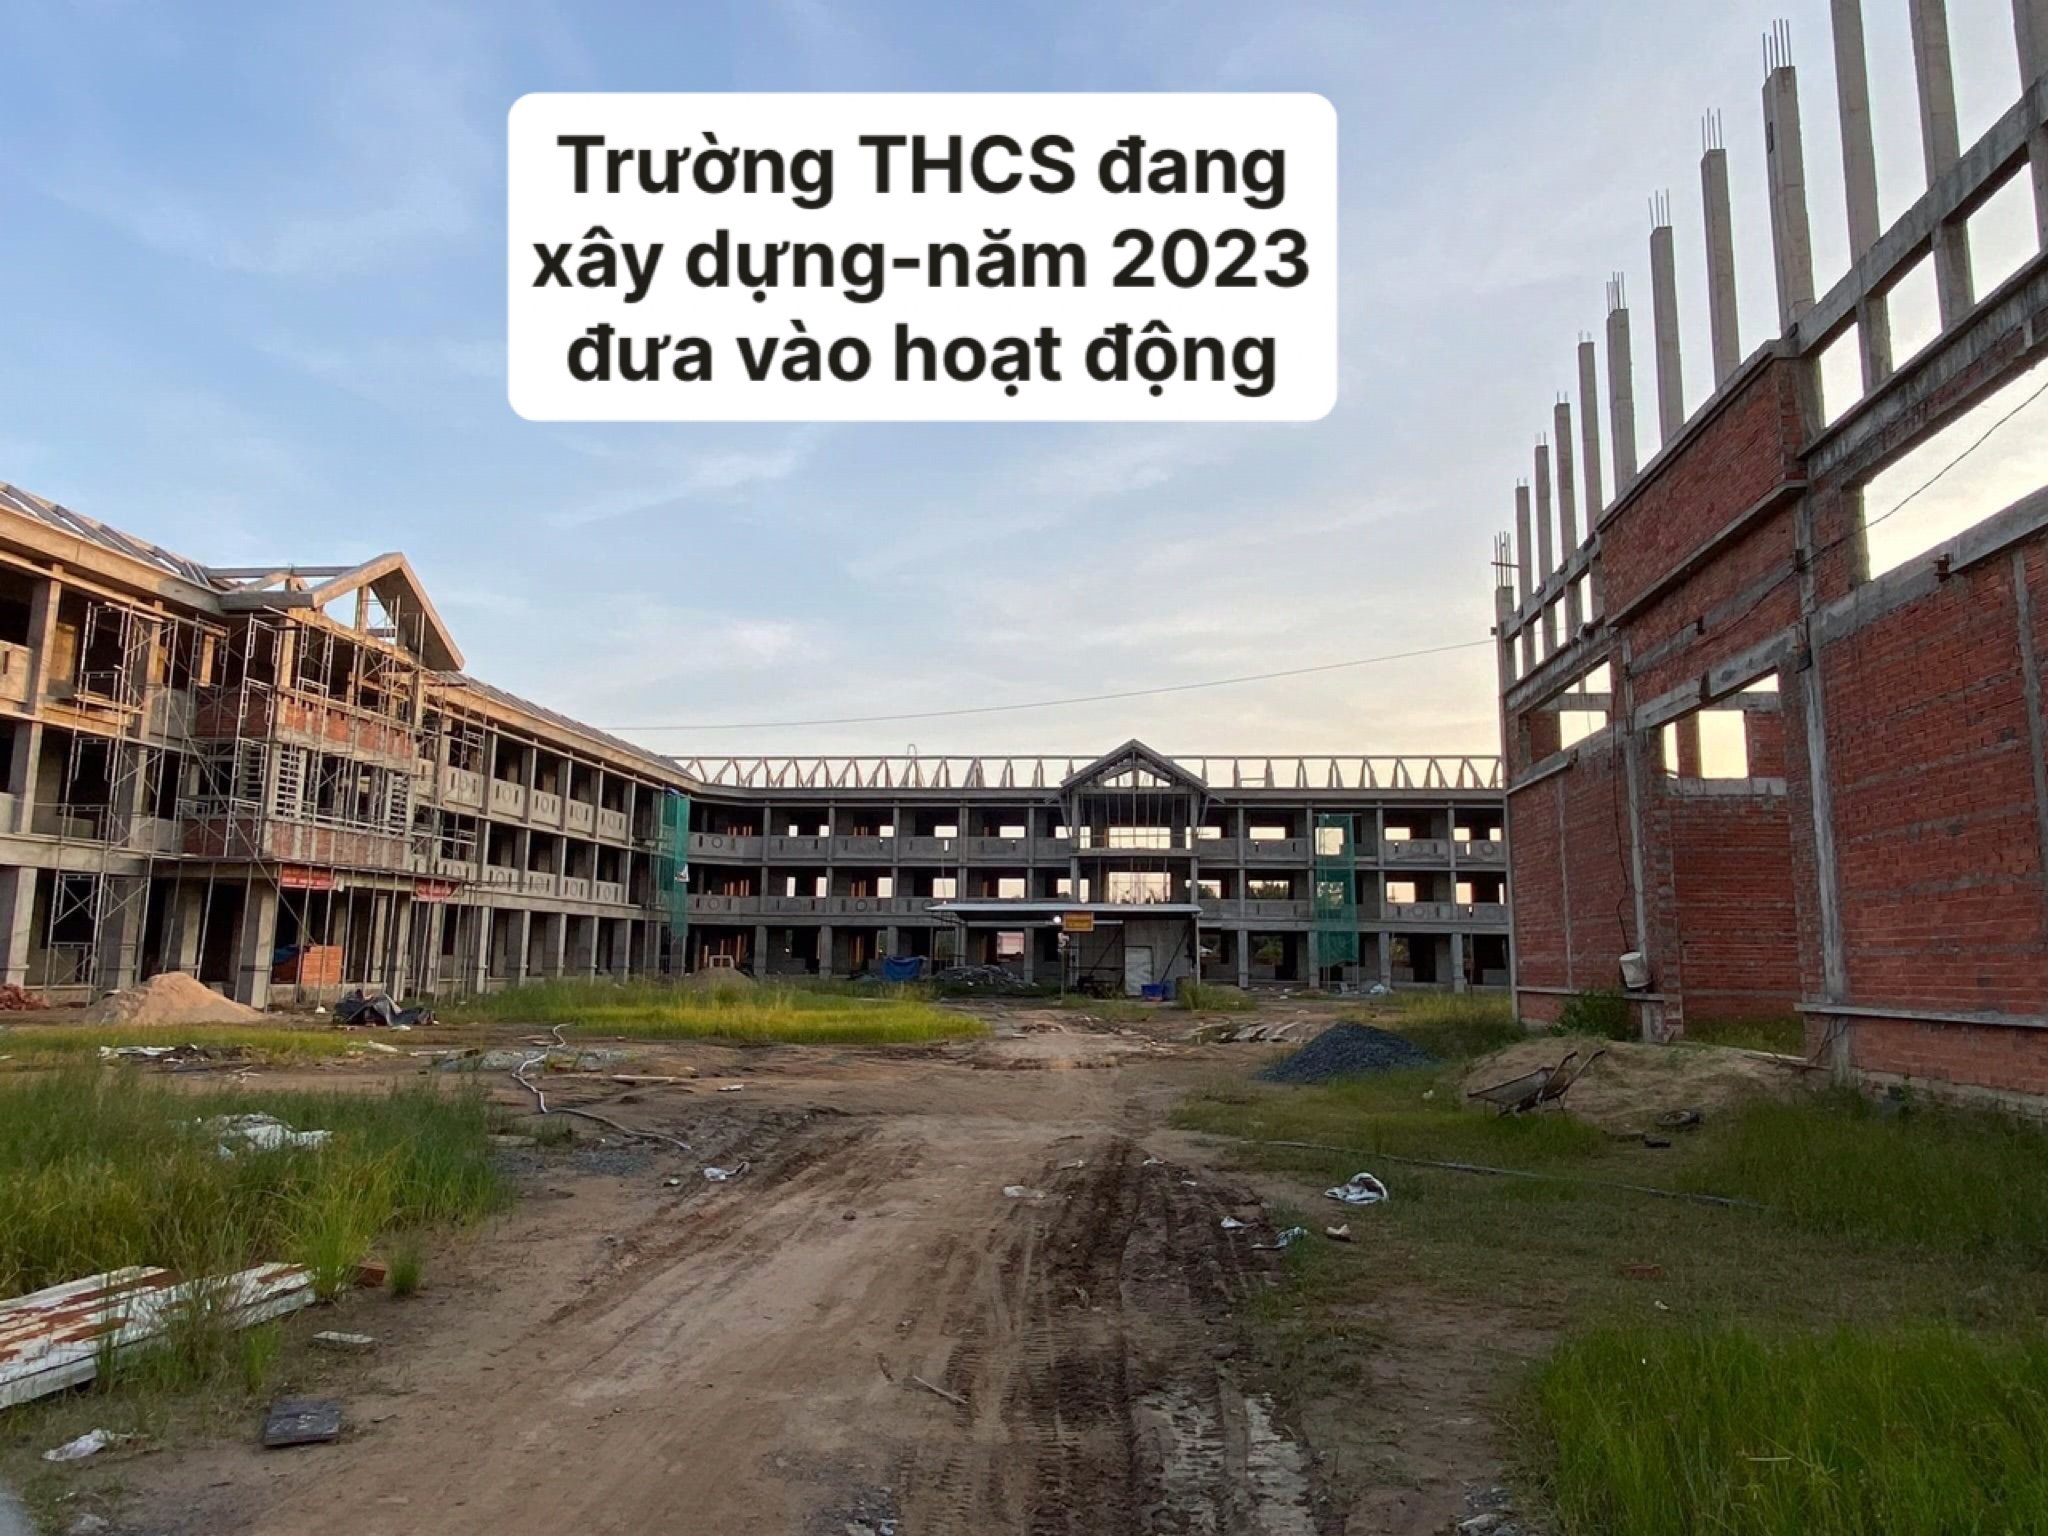 Bán Đất Chợ Thạnh Phú - Tuyến đường xuống trường THCS đang xây 5